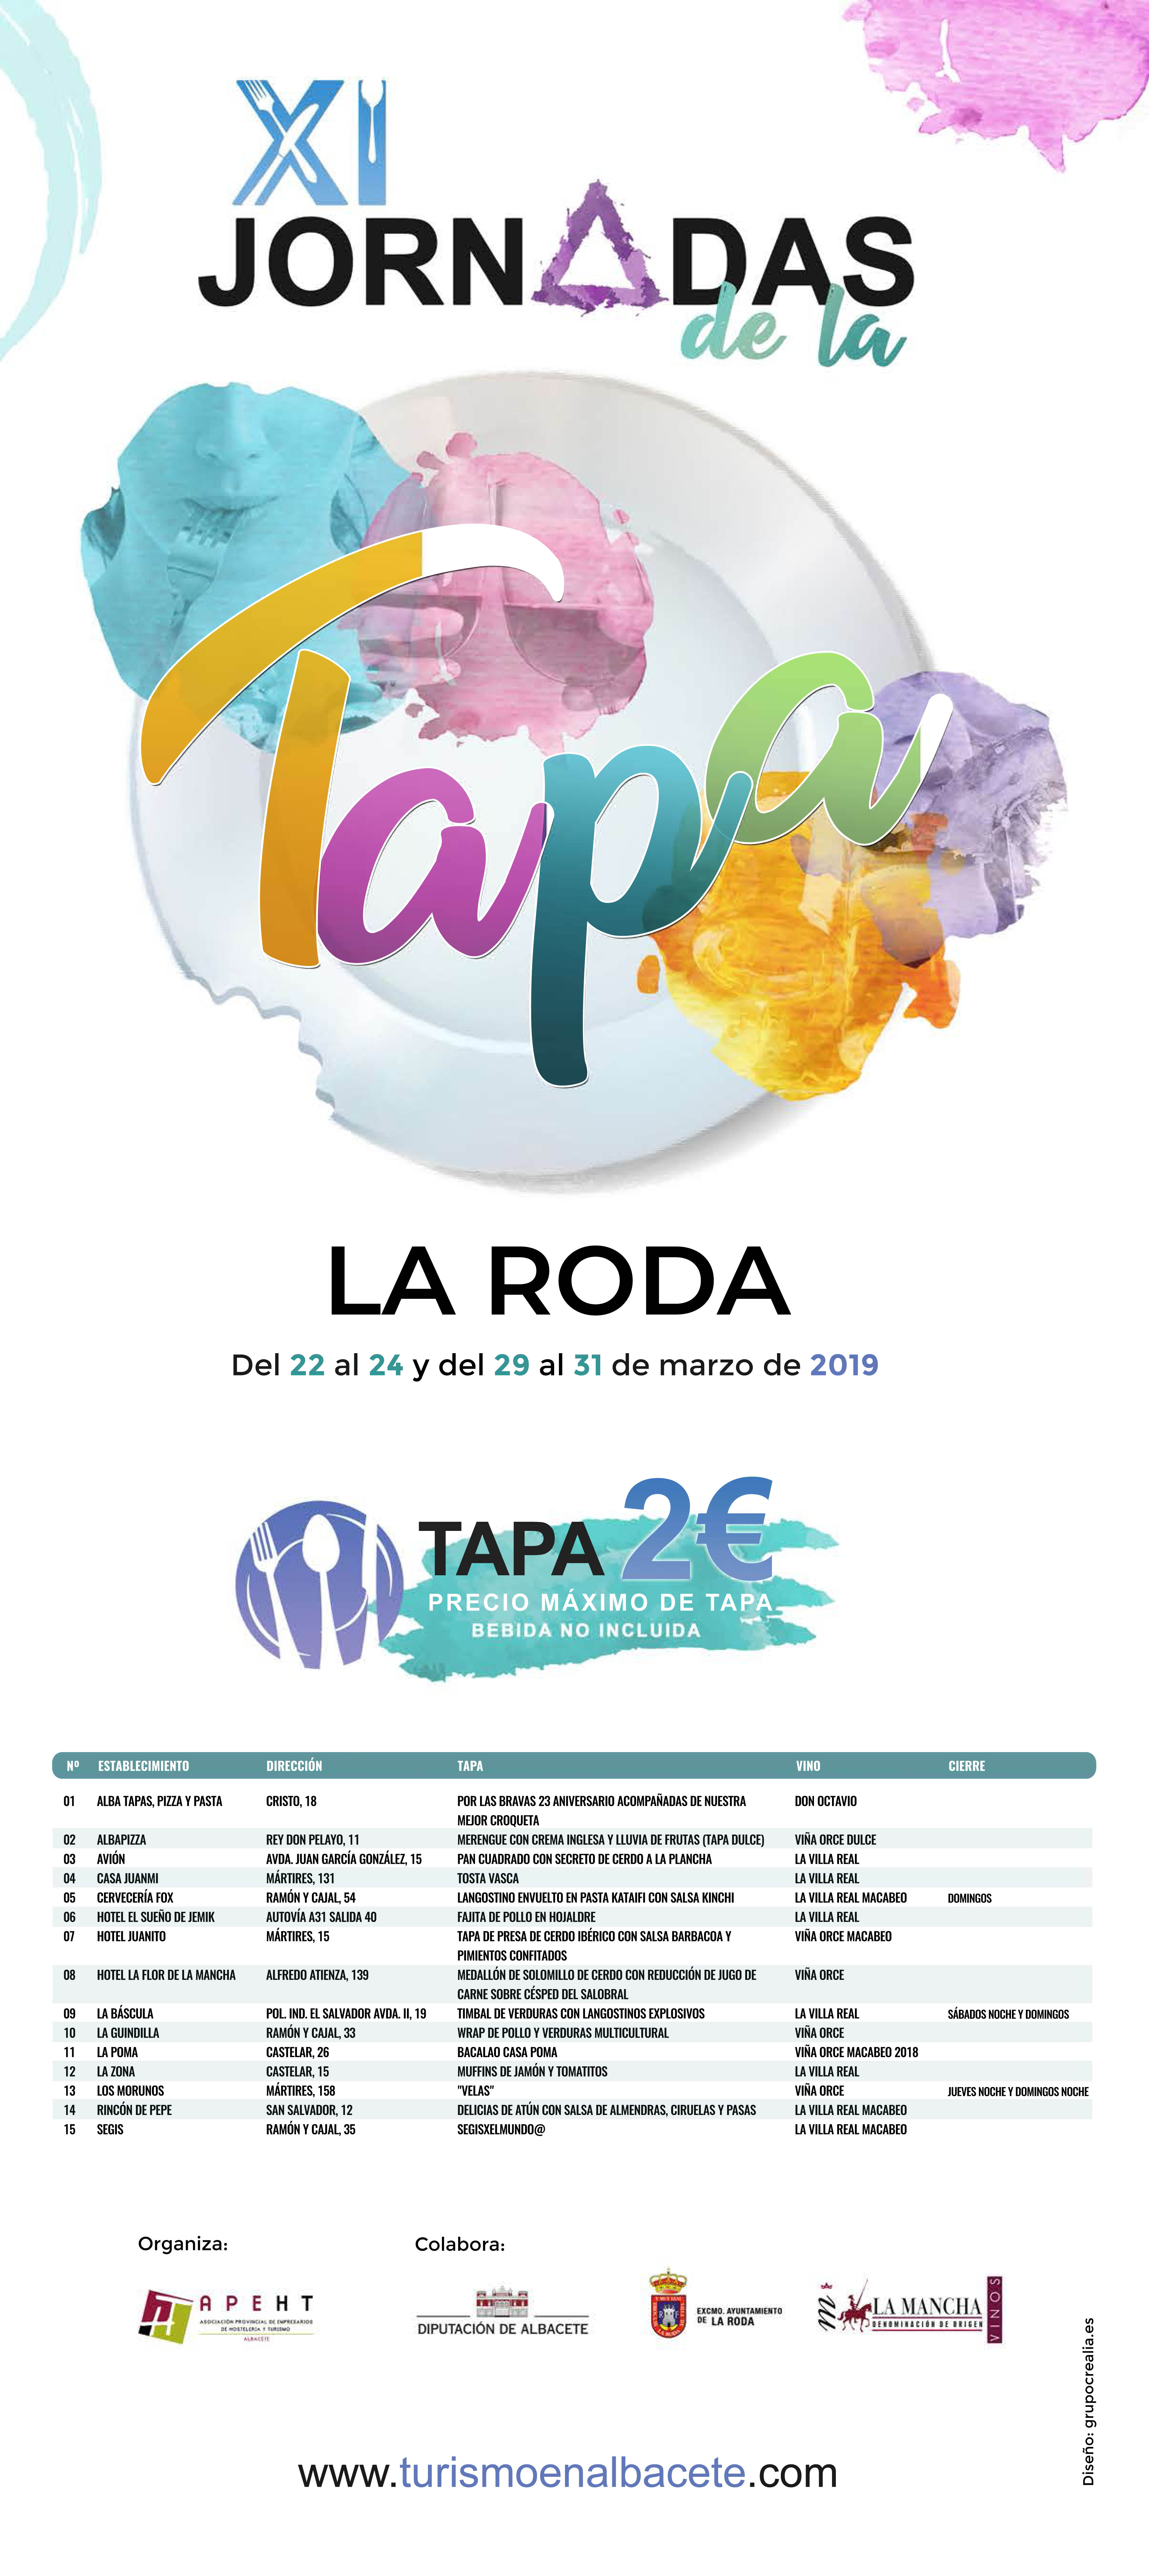 Continúan las Jornadas de la Tapa en La Roda, con un precio máximo de 2 euros